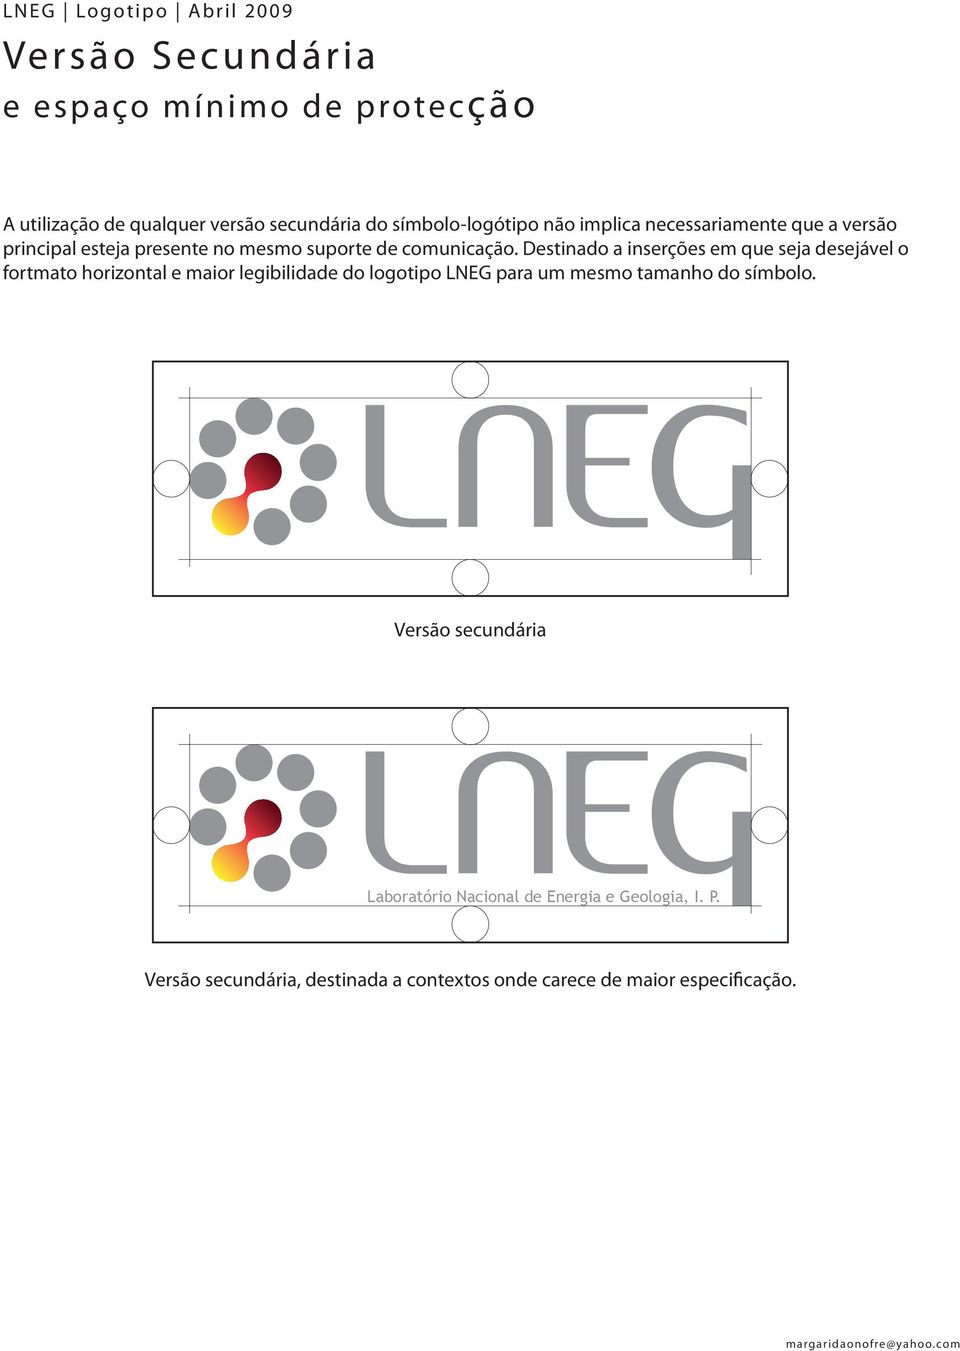 Destinado a inserções em que seja desejável o fortmato horizontal e maior legibilidade do logotipo LNEG para